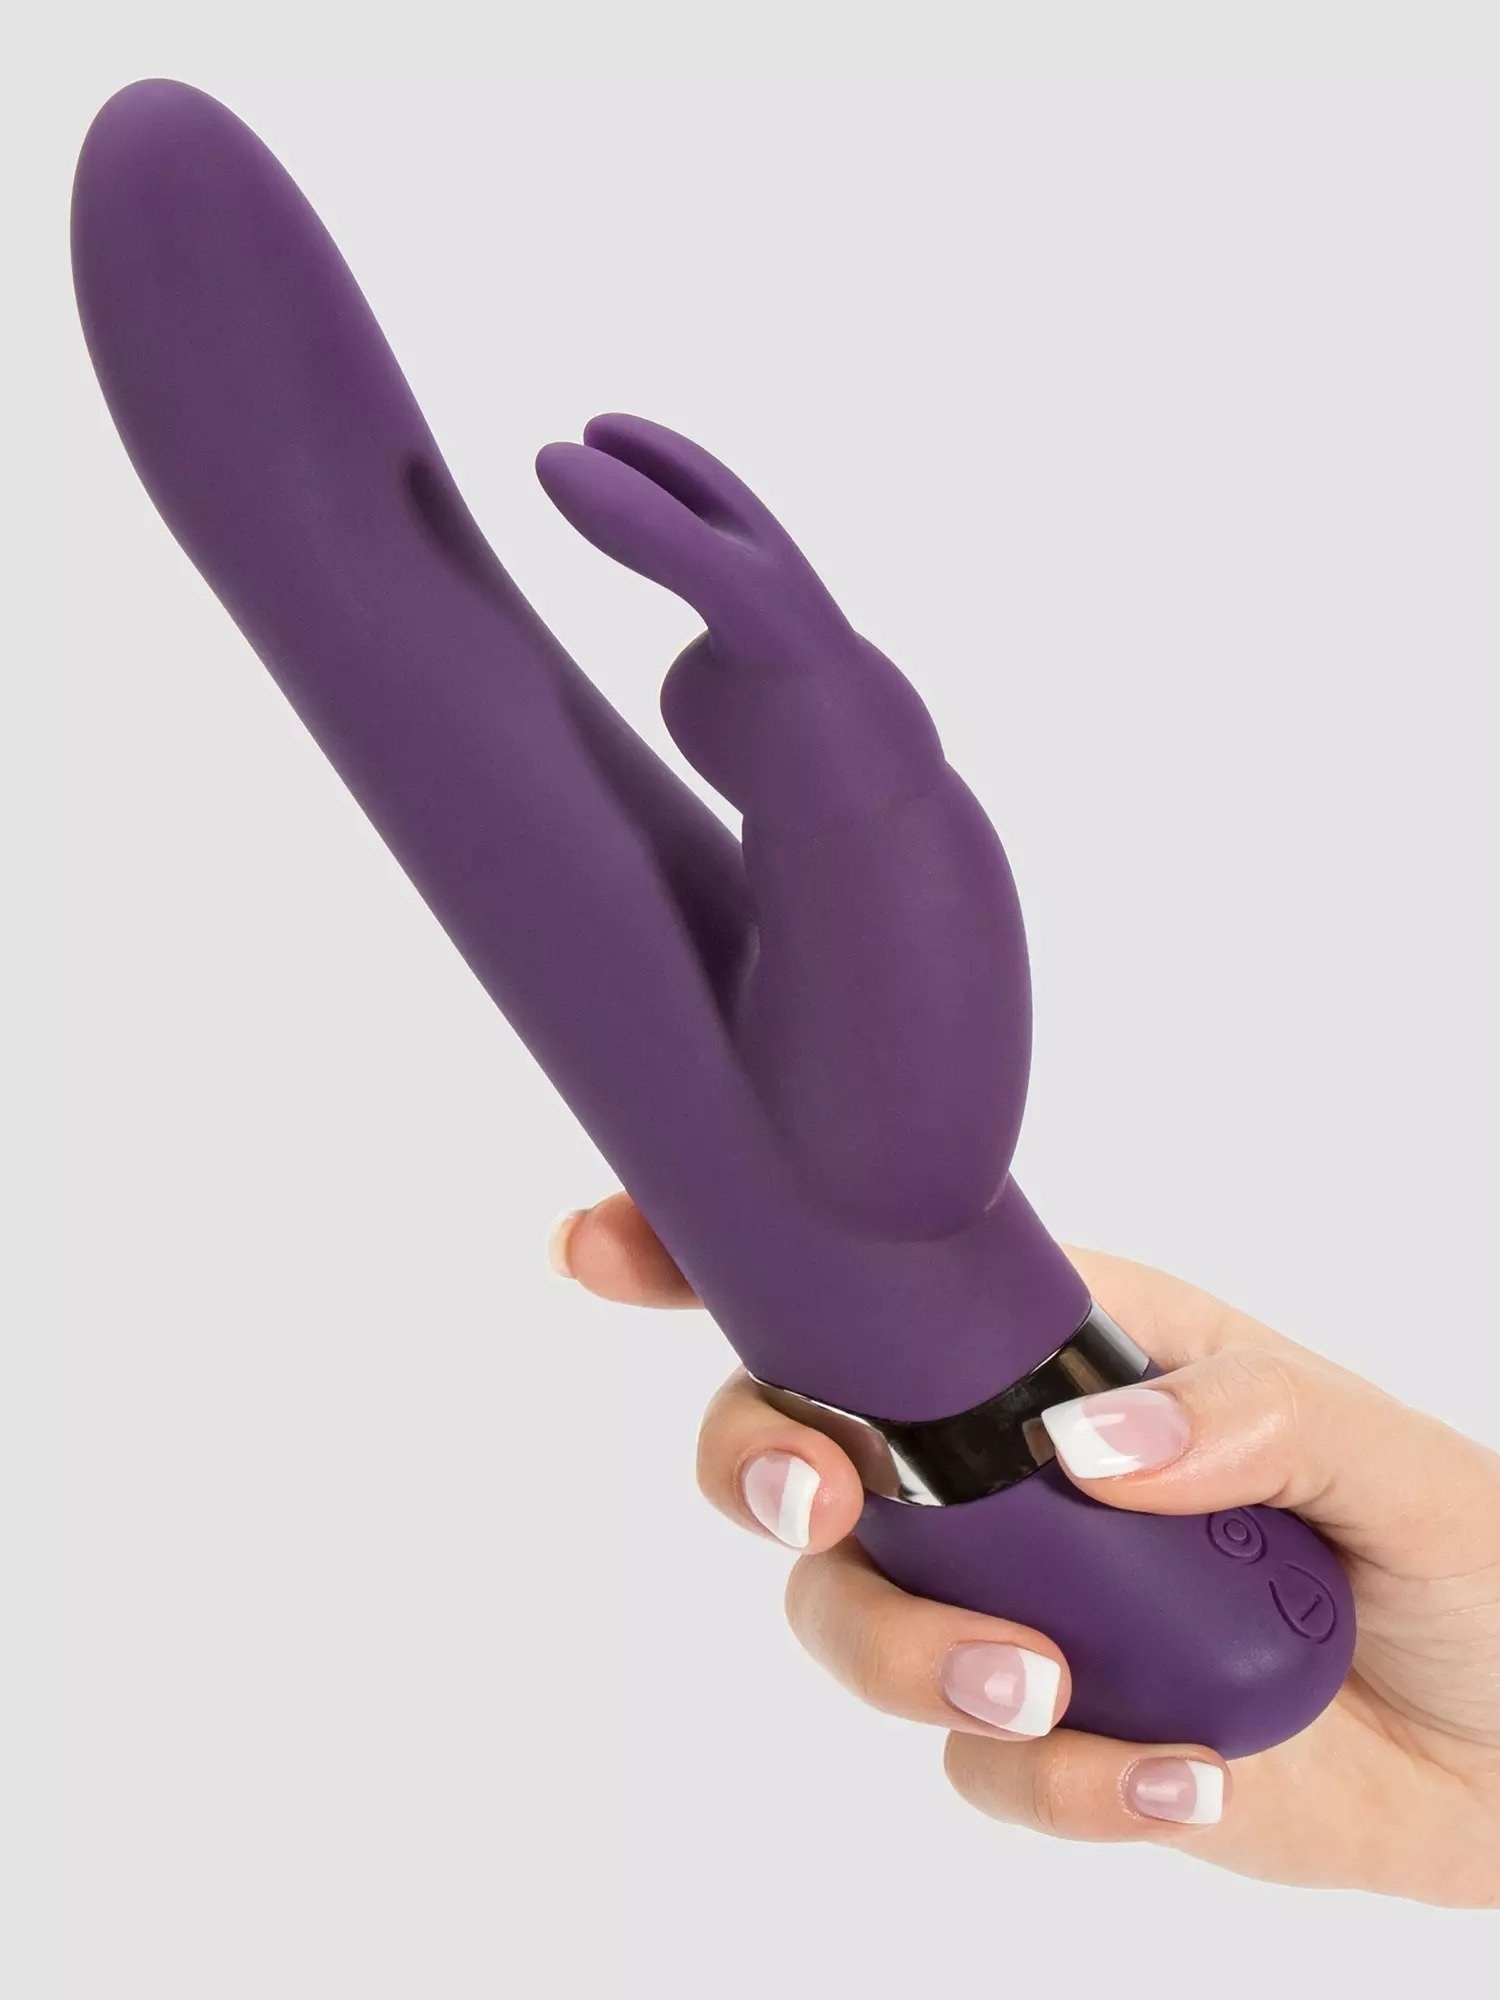 Model holding purple rabbit vibrator